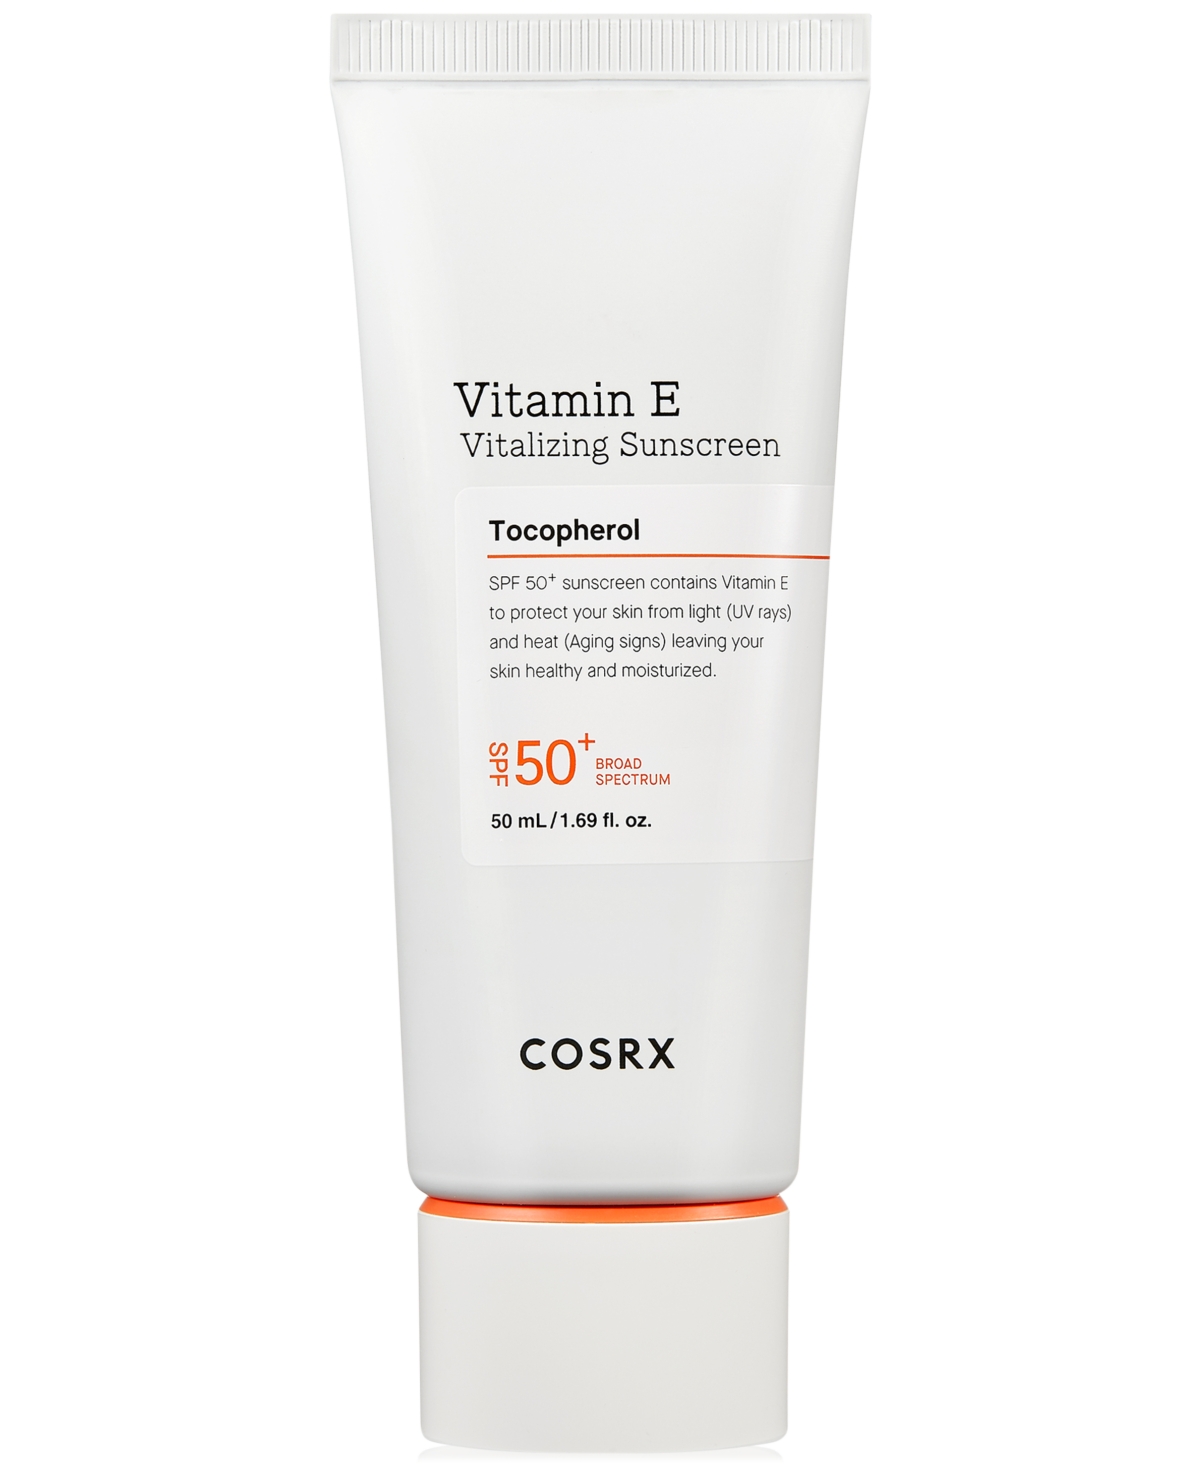 Vitamin E Vitalizing Sunscreen Spf 50+